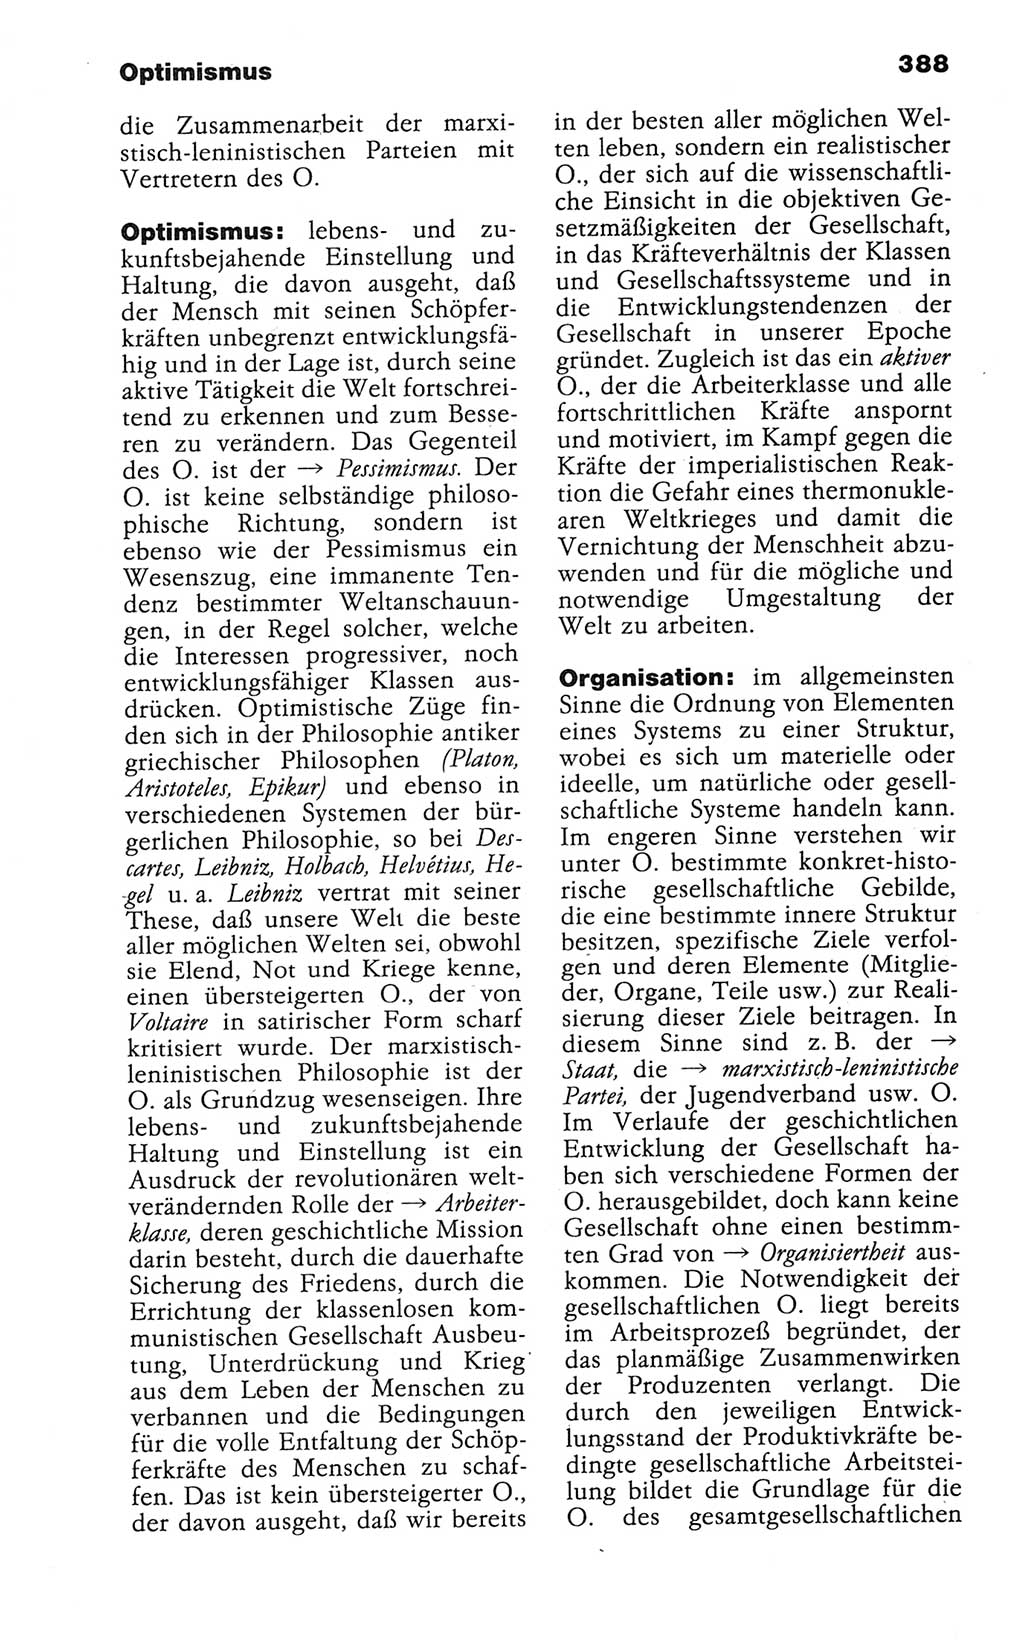 Wörterbuch der marxistisch-leninistischen Philosophie [Deutsche Demokratische Republik (DDR)] 1986, Seite 388 (Wb. ML Phil. DDR 1986, S. 388)